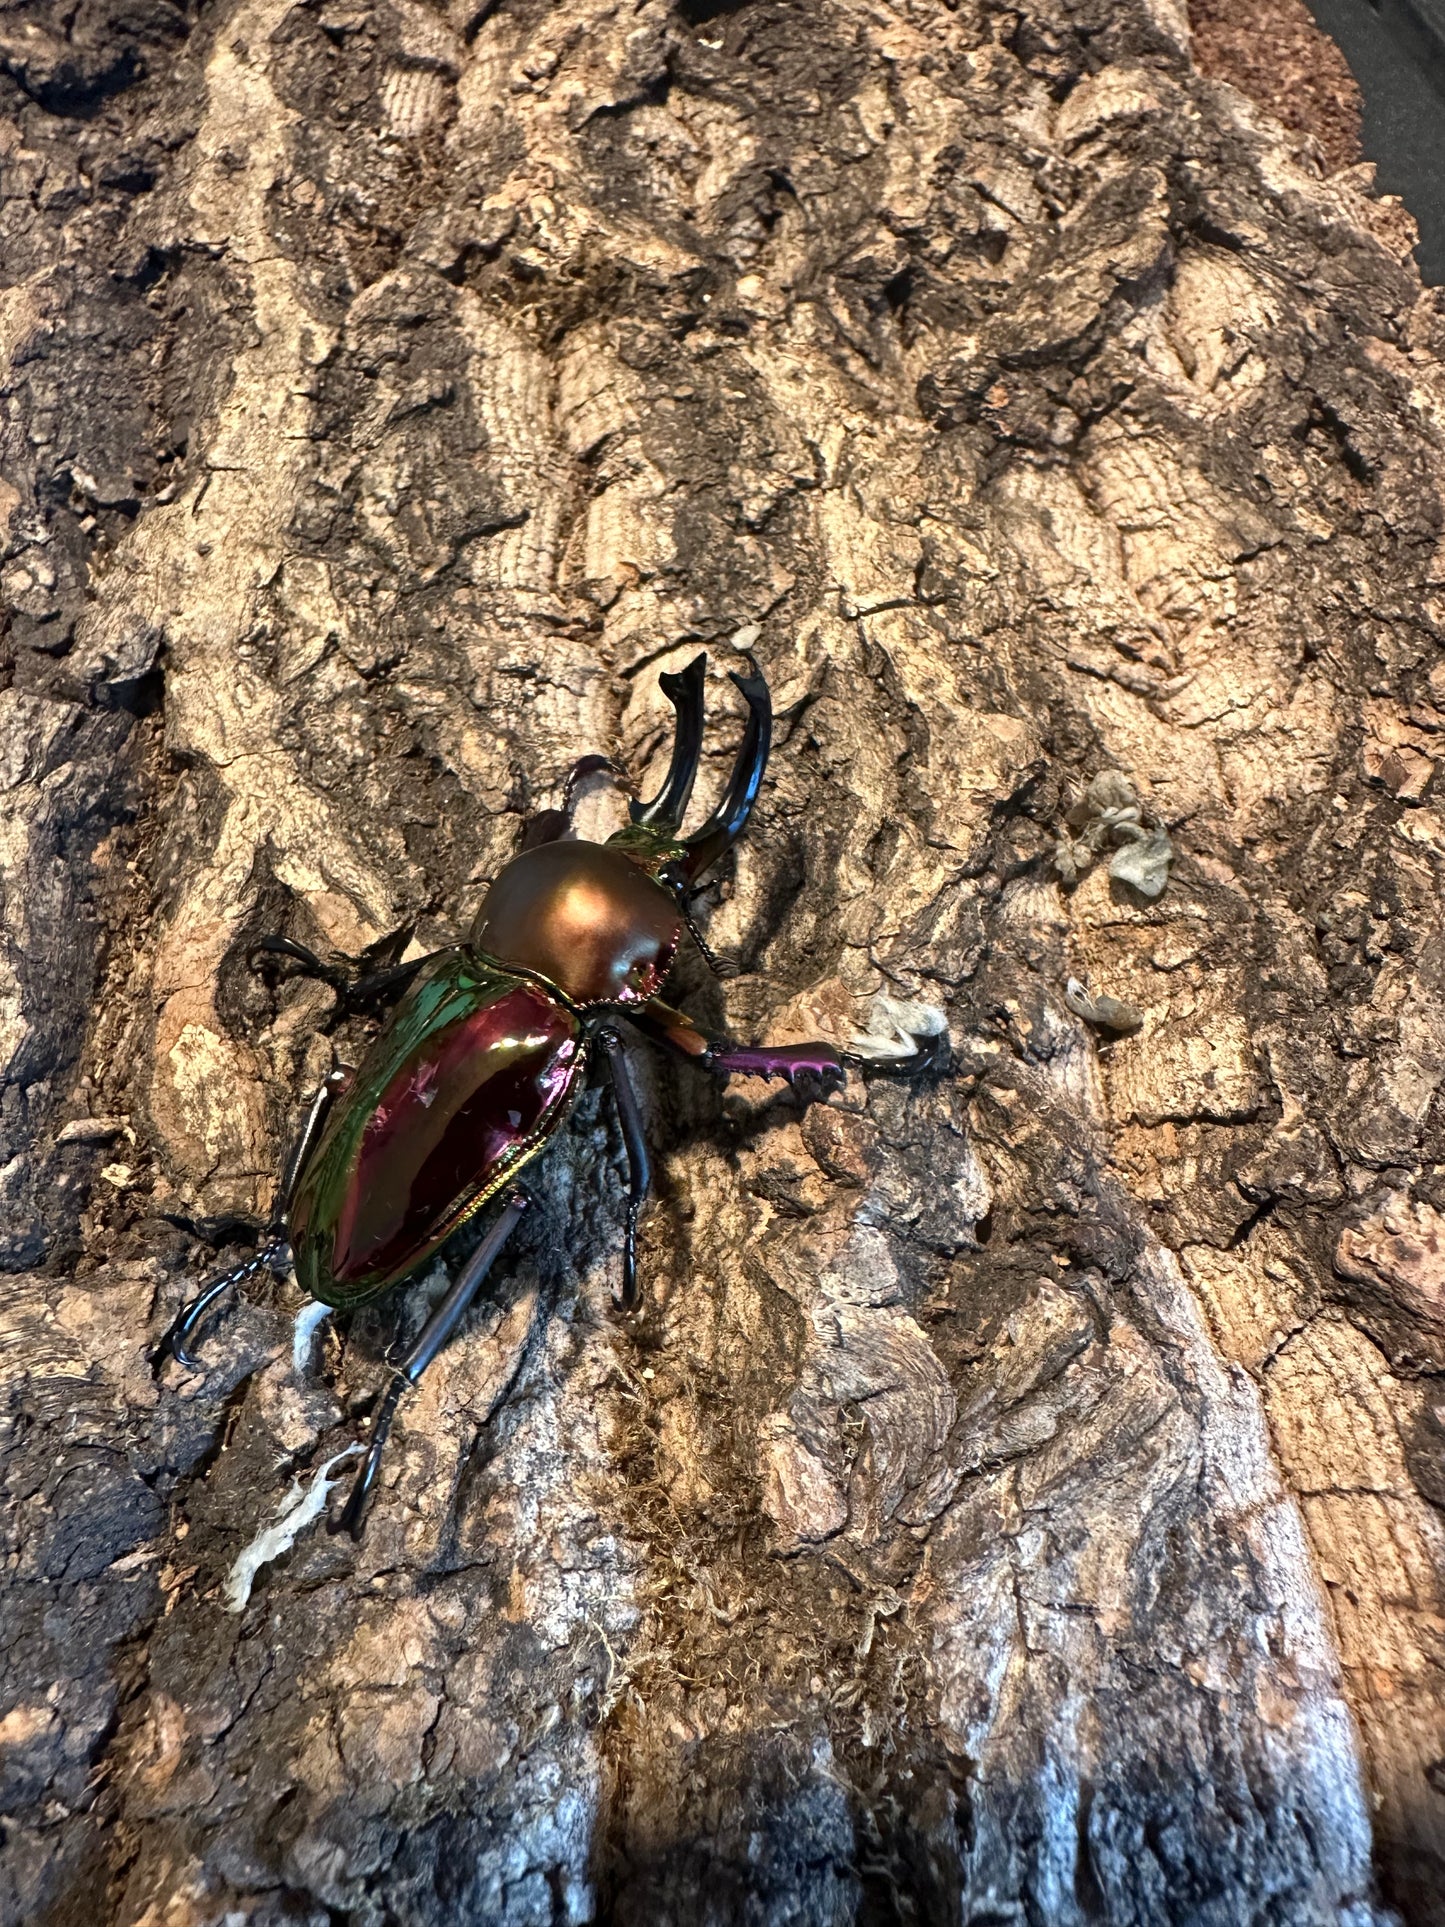 MAJOR male rainbow stag beetle